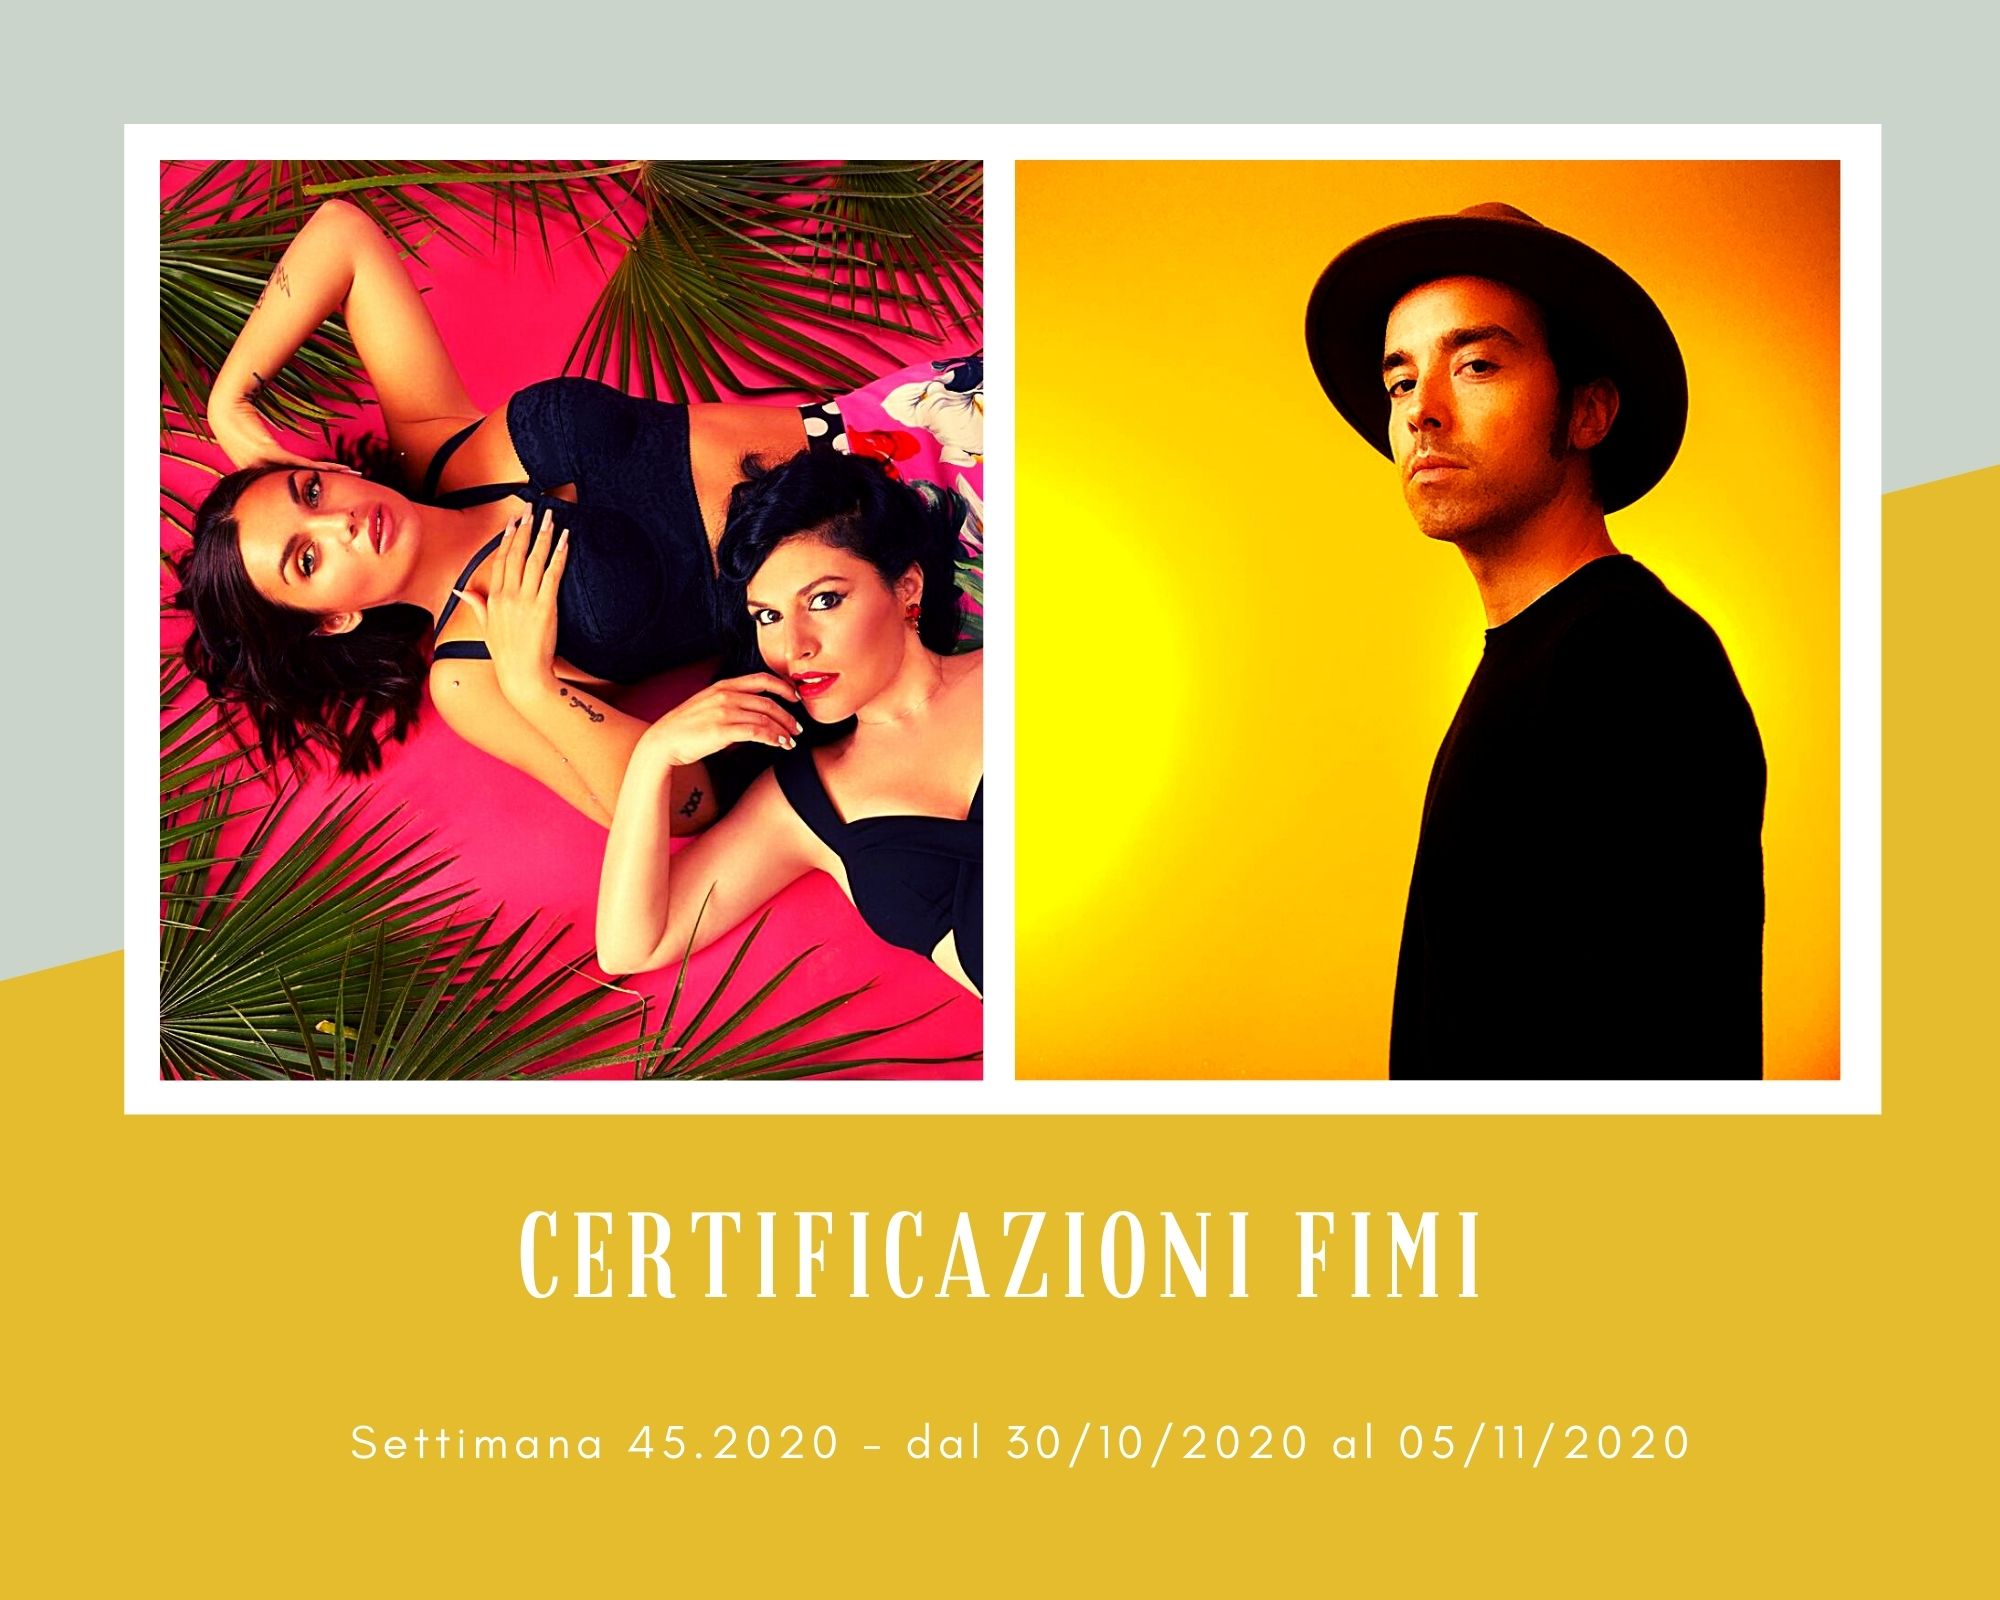 Certificazioni FIMI, week 45. Giusy Ferreri e Elettra Lamborghini festeggiano il platino. Per Diodato è doppio!